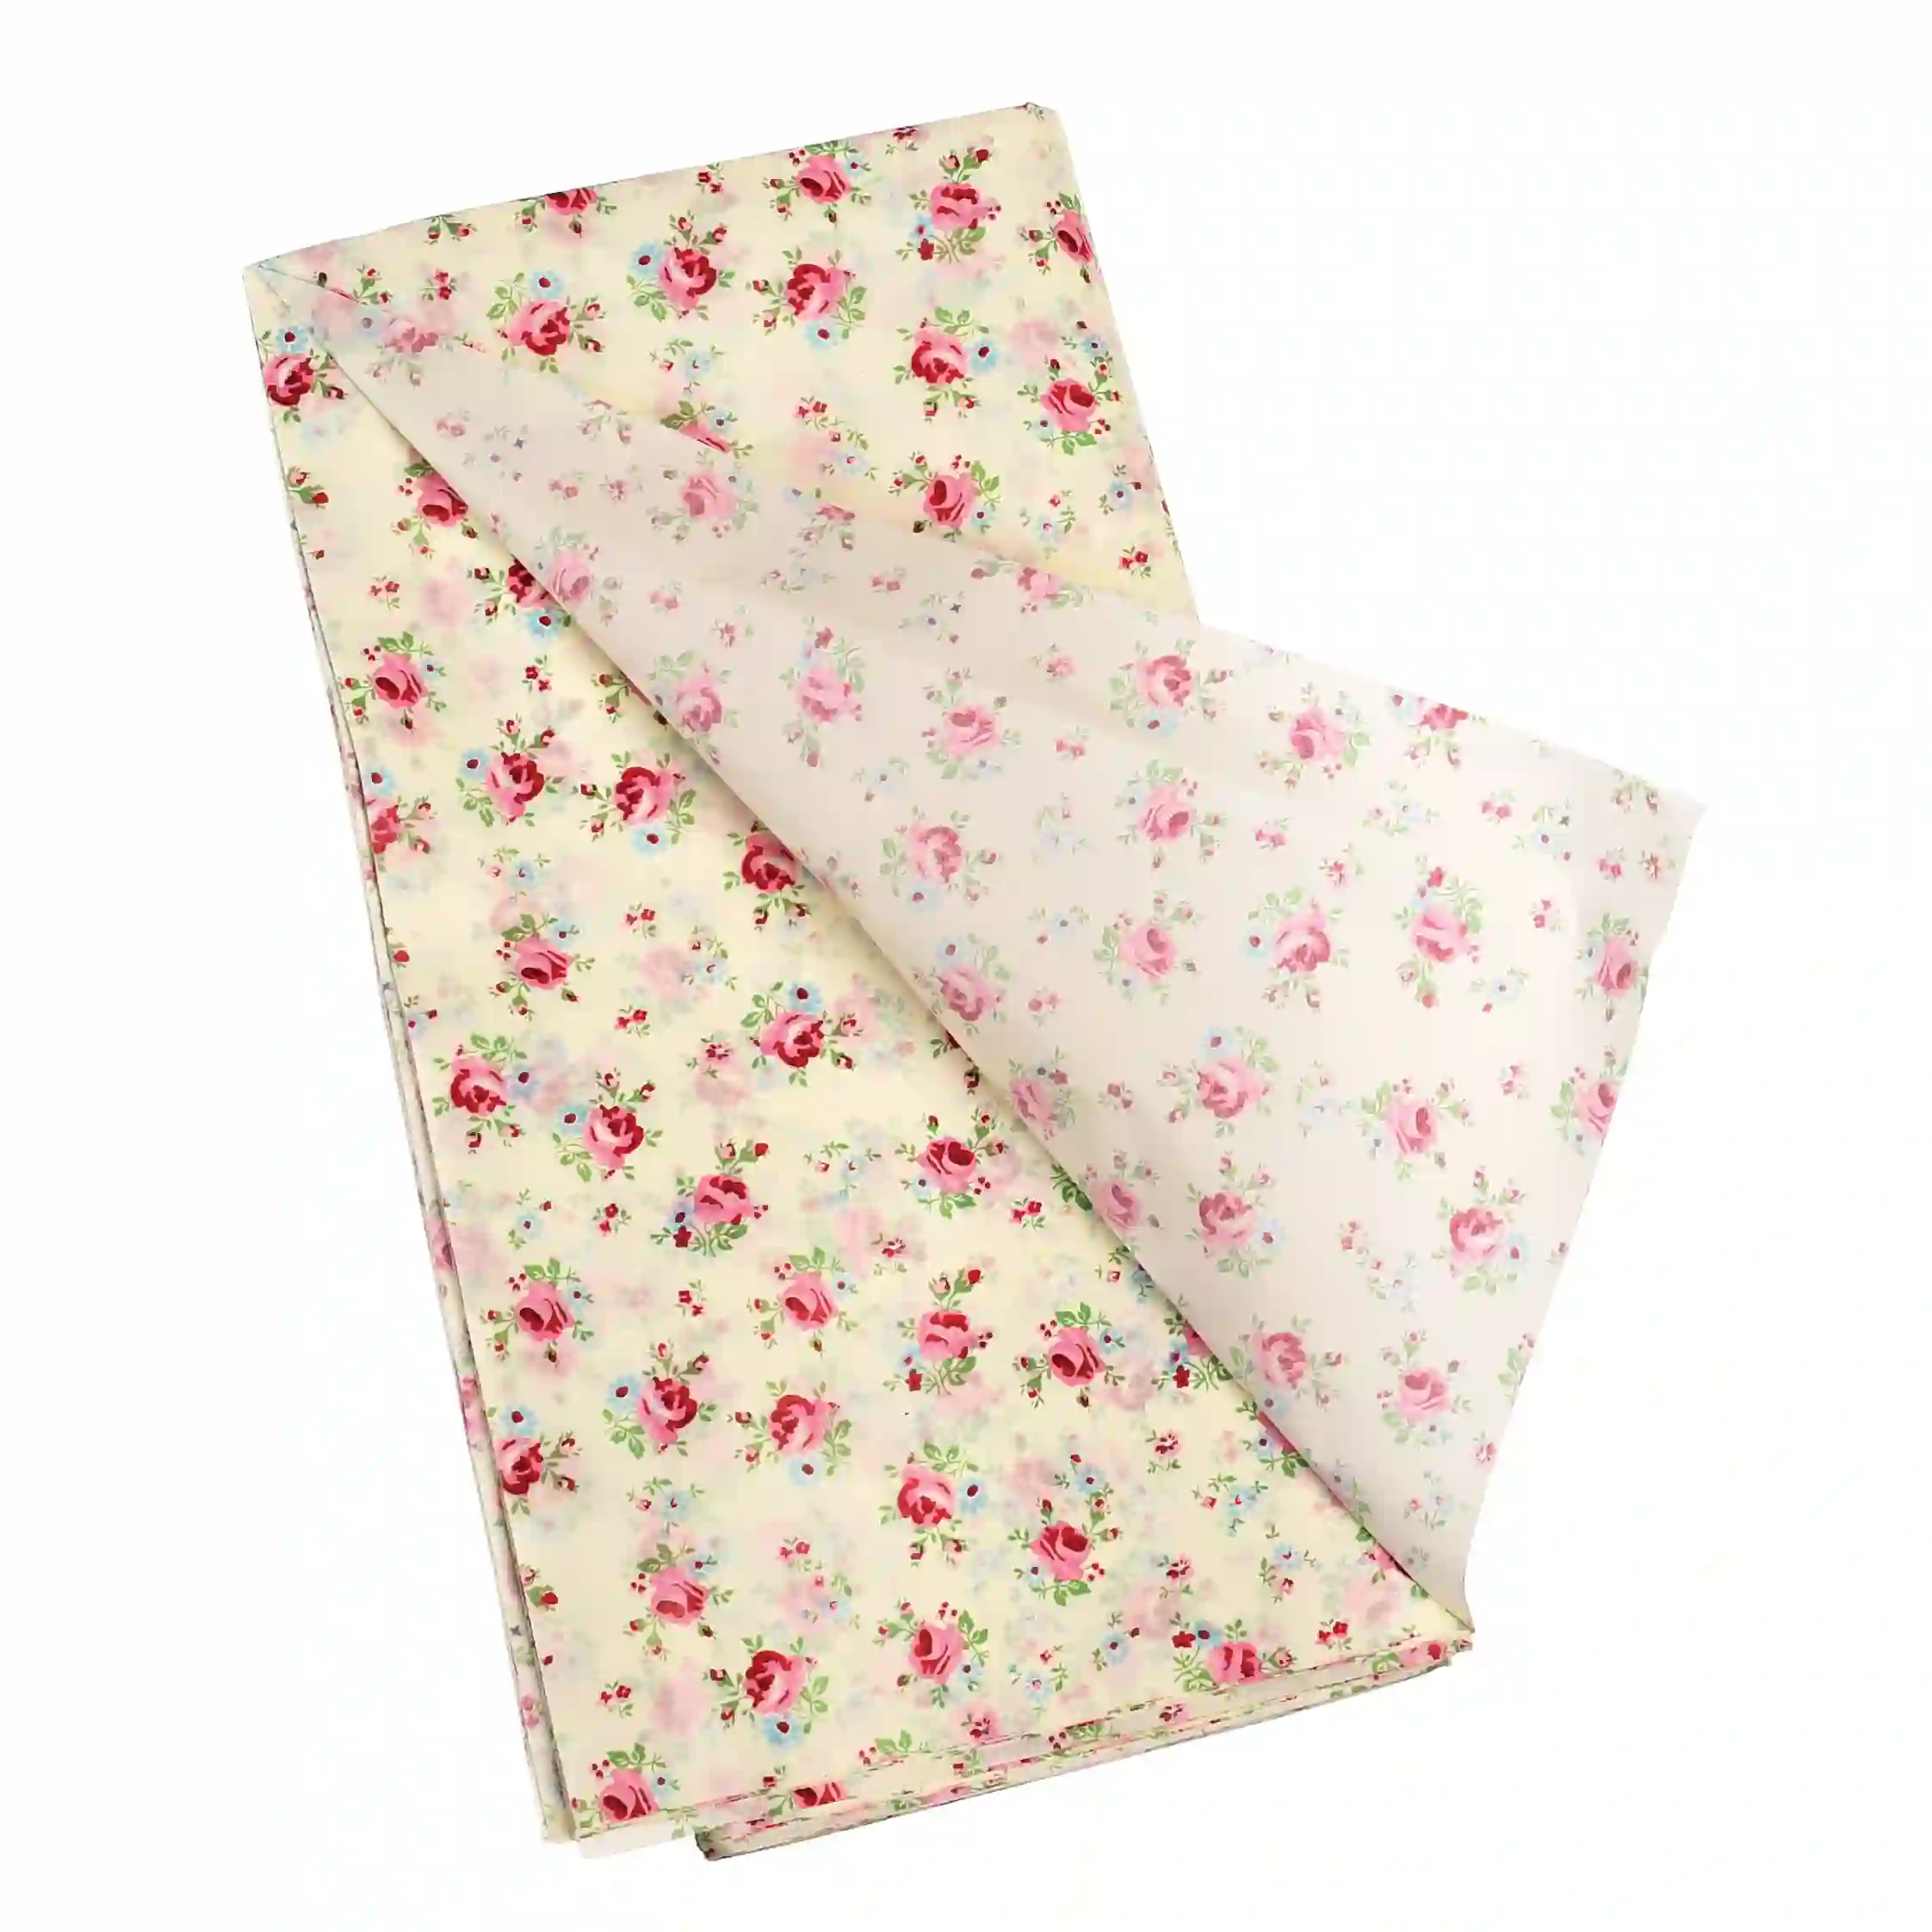 tissue paper (10 sheets) - la petite rose